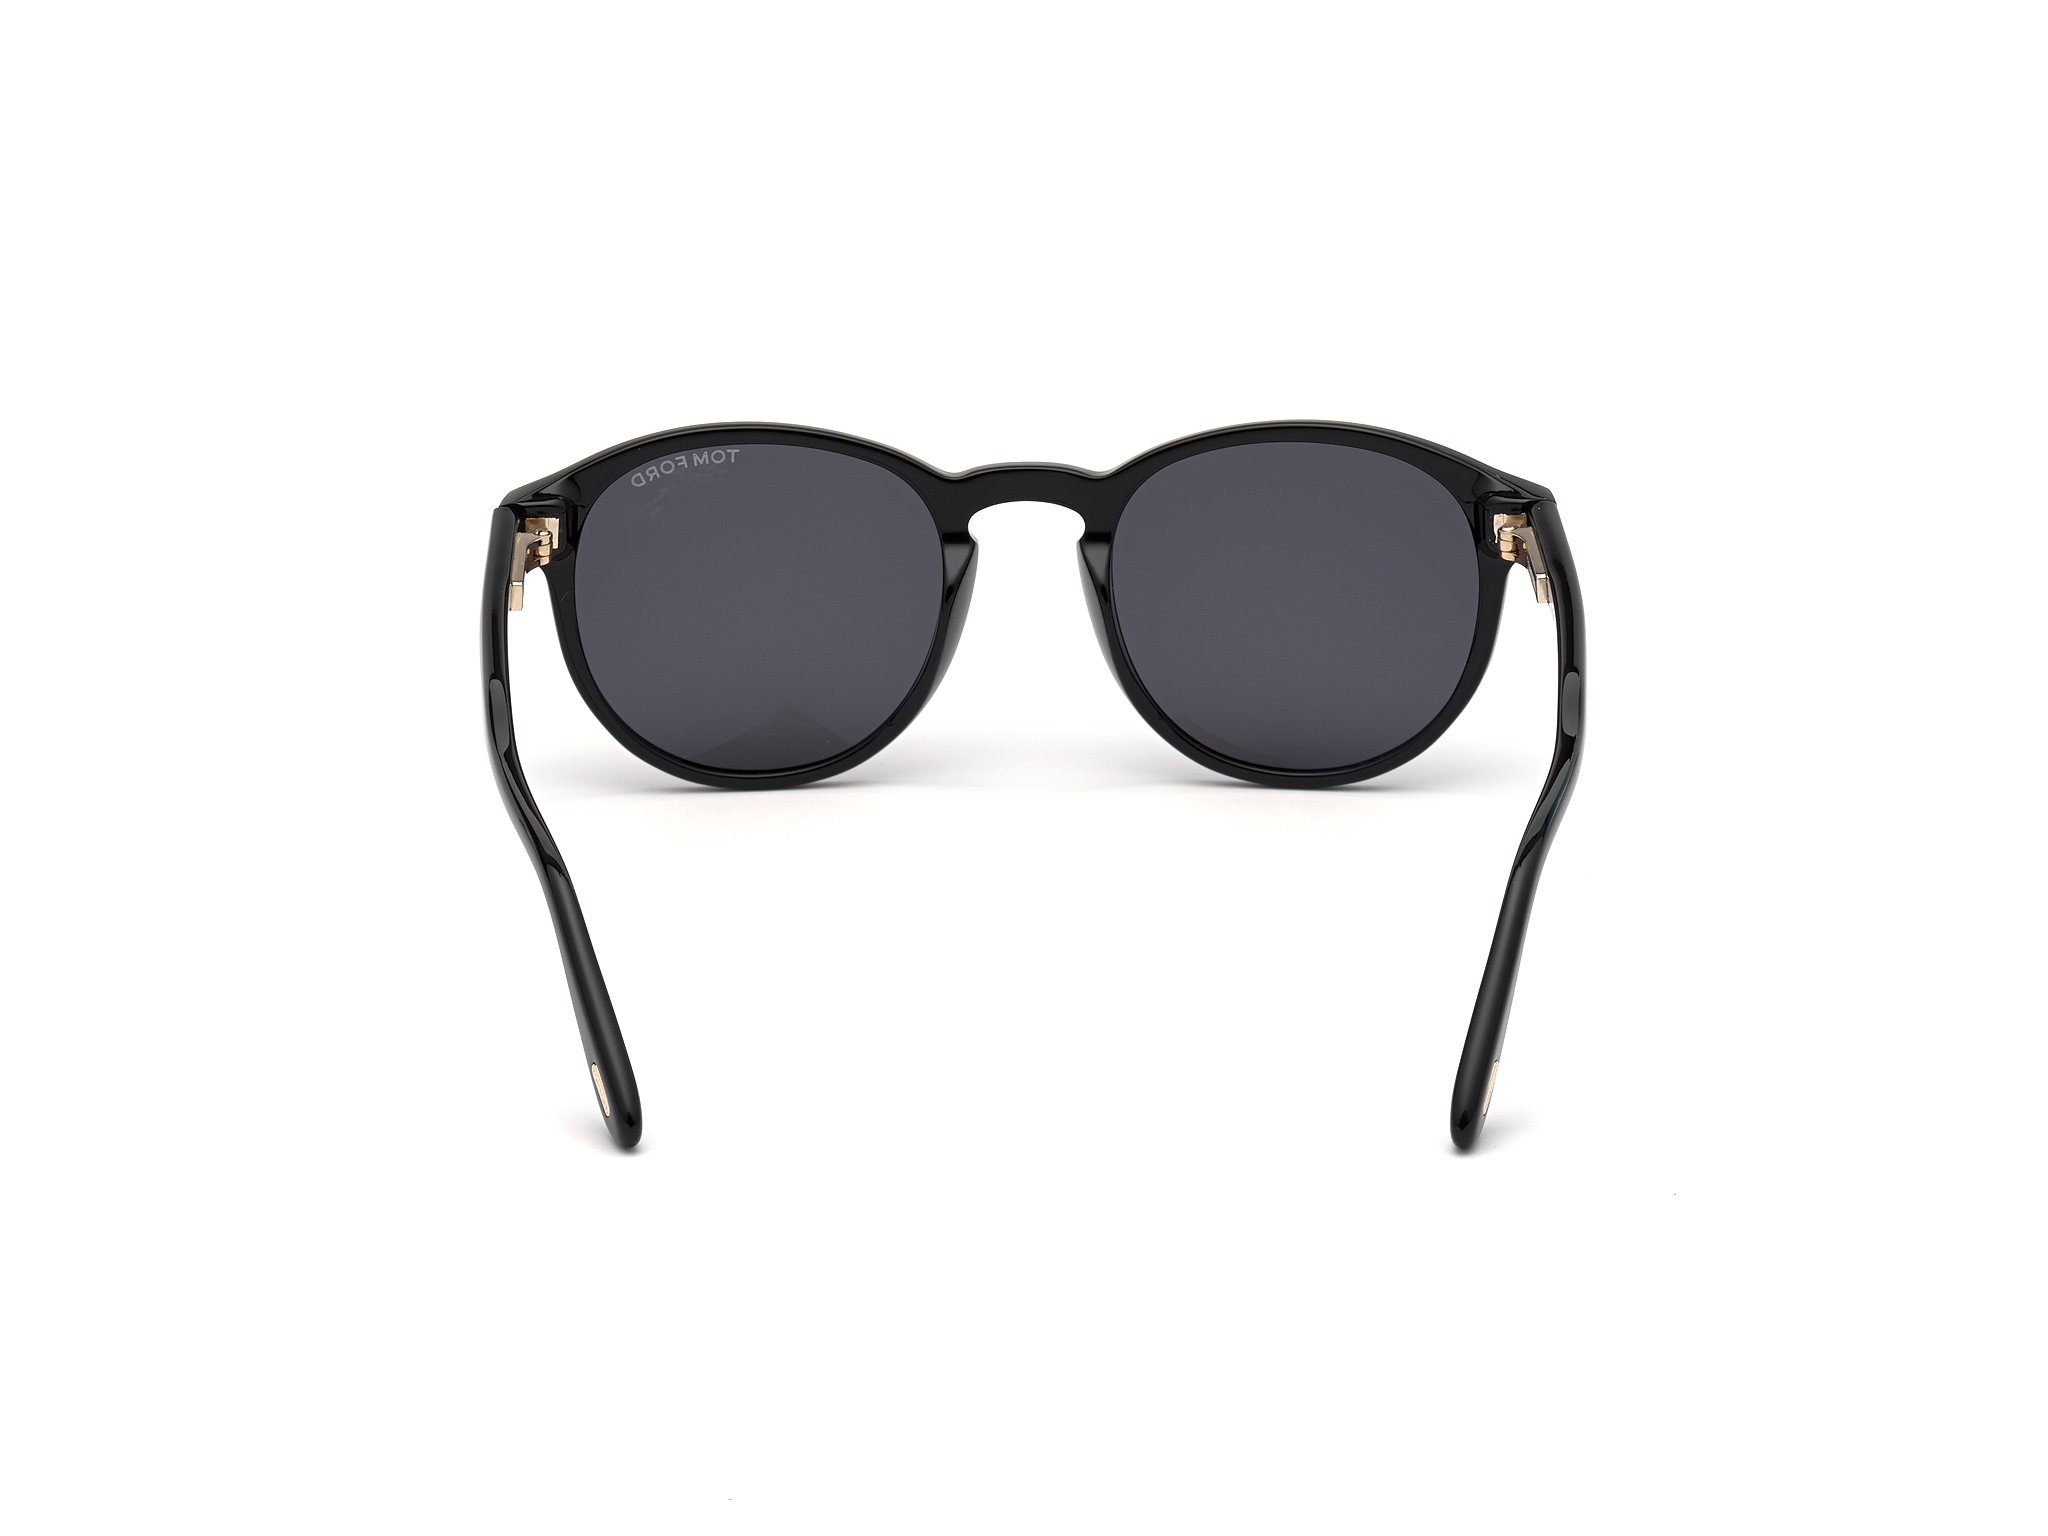 Das Bild zeigt die Sonnenbrille FT0834 01A von der Marke Tom Ford in schwarz.